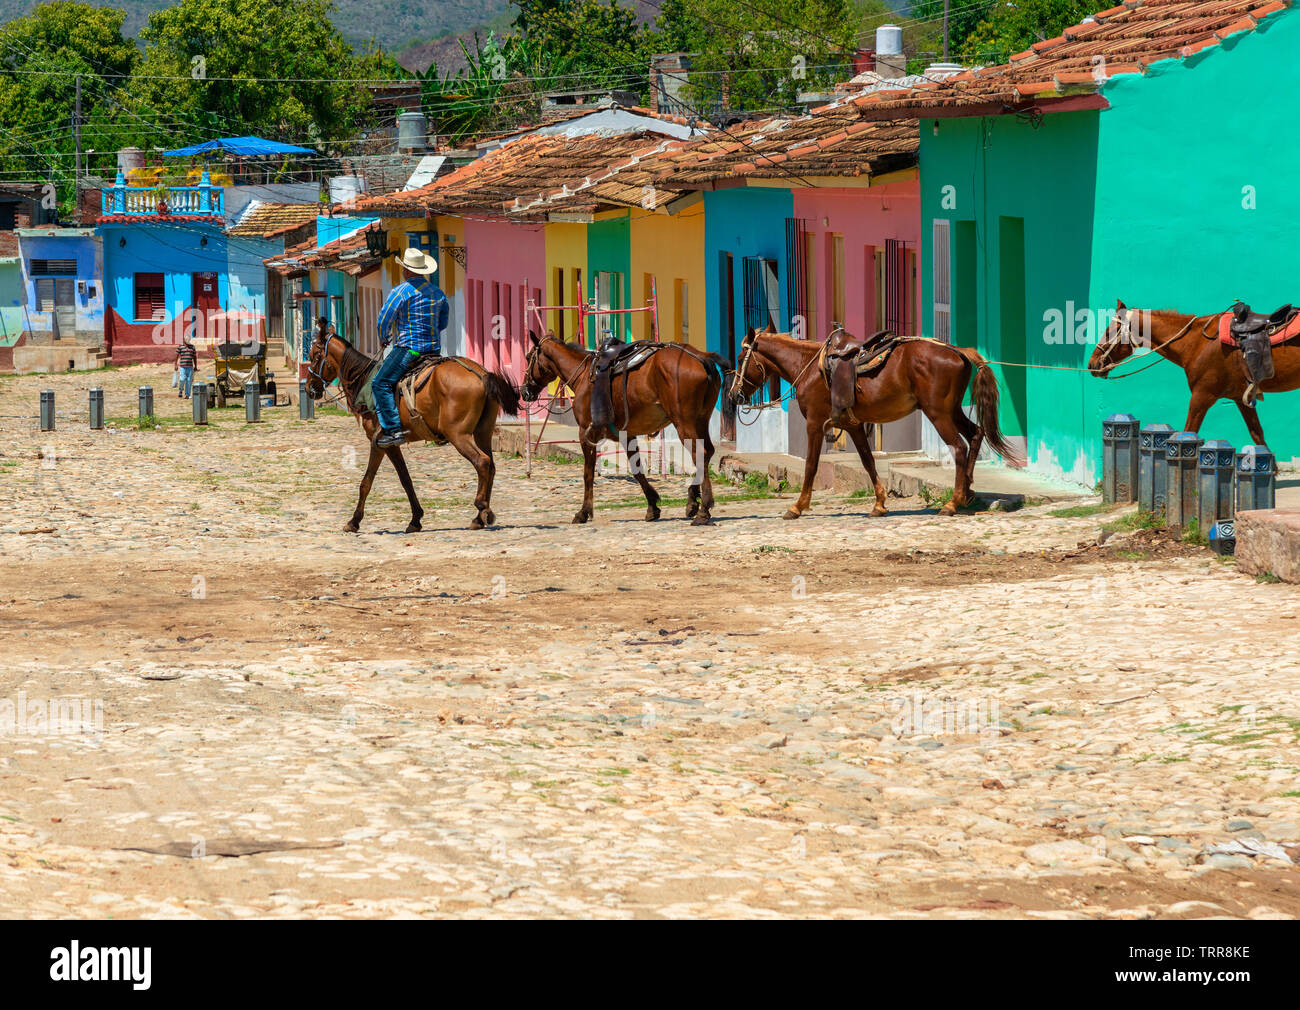 Cowboy mène une chaîne de chevaux au moyen d'une rue pavée, bordée de maisons colorées dans la ville de Trinidad, Cuba, Caraïbes Banque D'Images